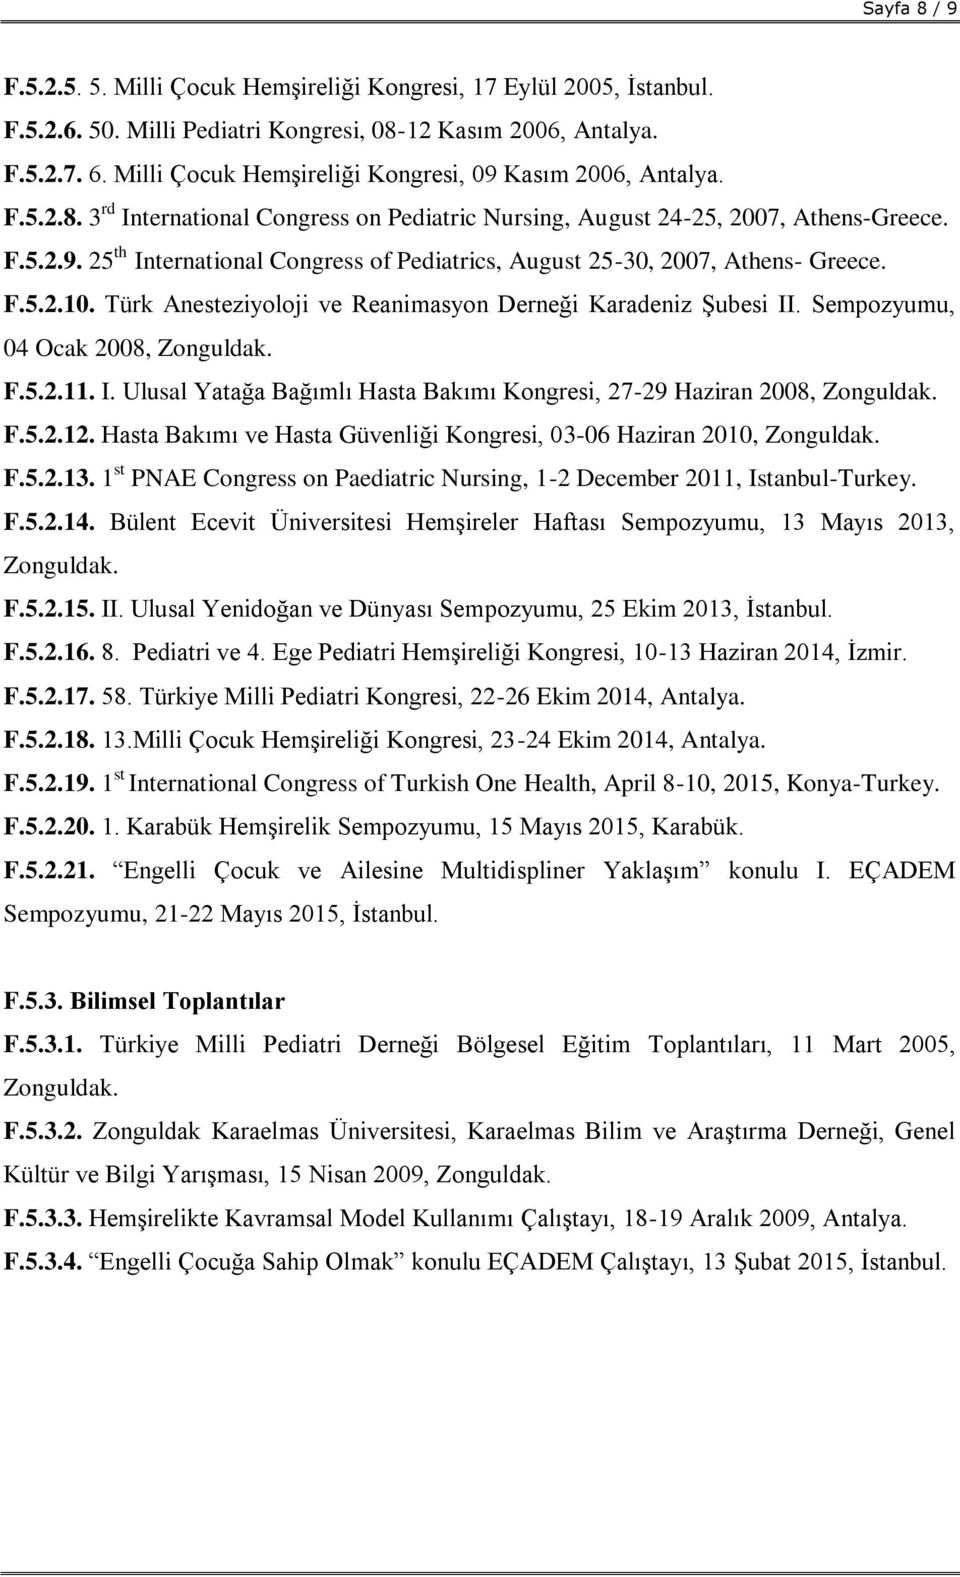 F.5.2.10. Türk Anesteziyoloji ve Reanimasyon Derneği Karadeniz Şubesi II. Sempozyumu, 04 Ocak 2008, Zonguldak. F.5.2.11. I. Ulusal Yatağa Bağımlı Hasta Bakımı Kongresi, 27-29 Haziran 2008, Zonguldak.